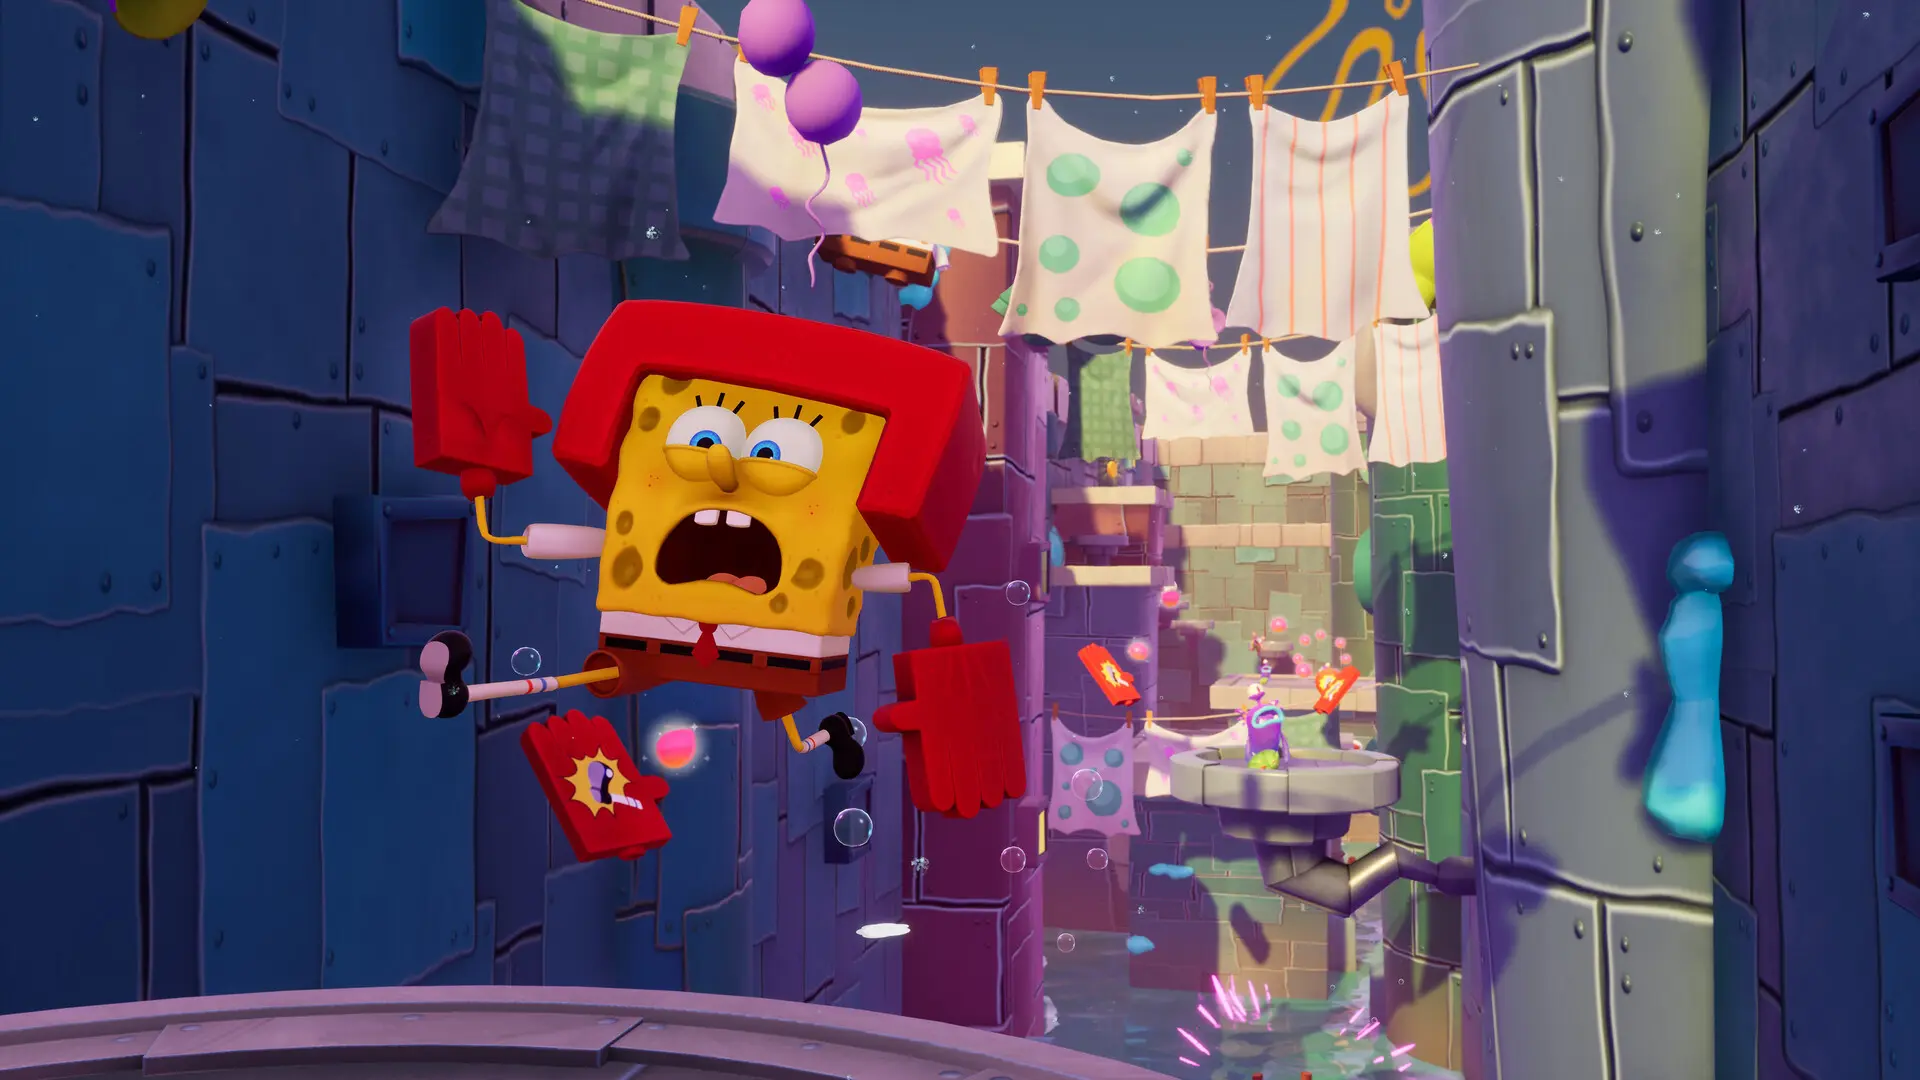 دانلود بازی SpongeBob SquarePants: The Cosmic Shake برای کامپیوتر